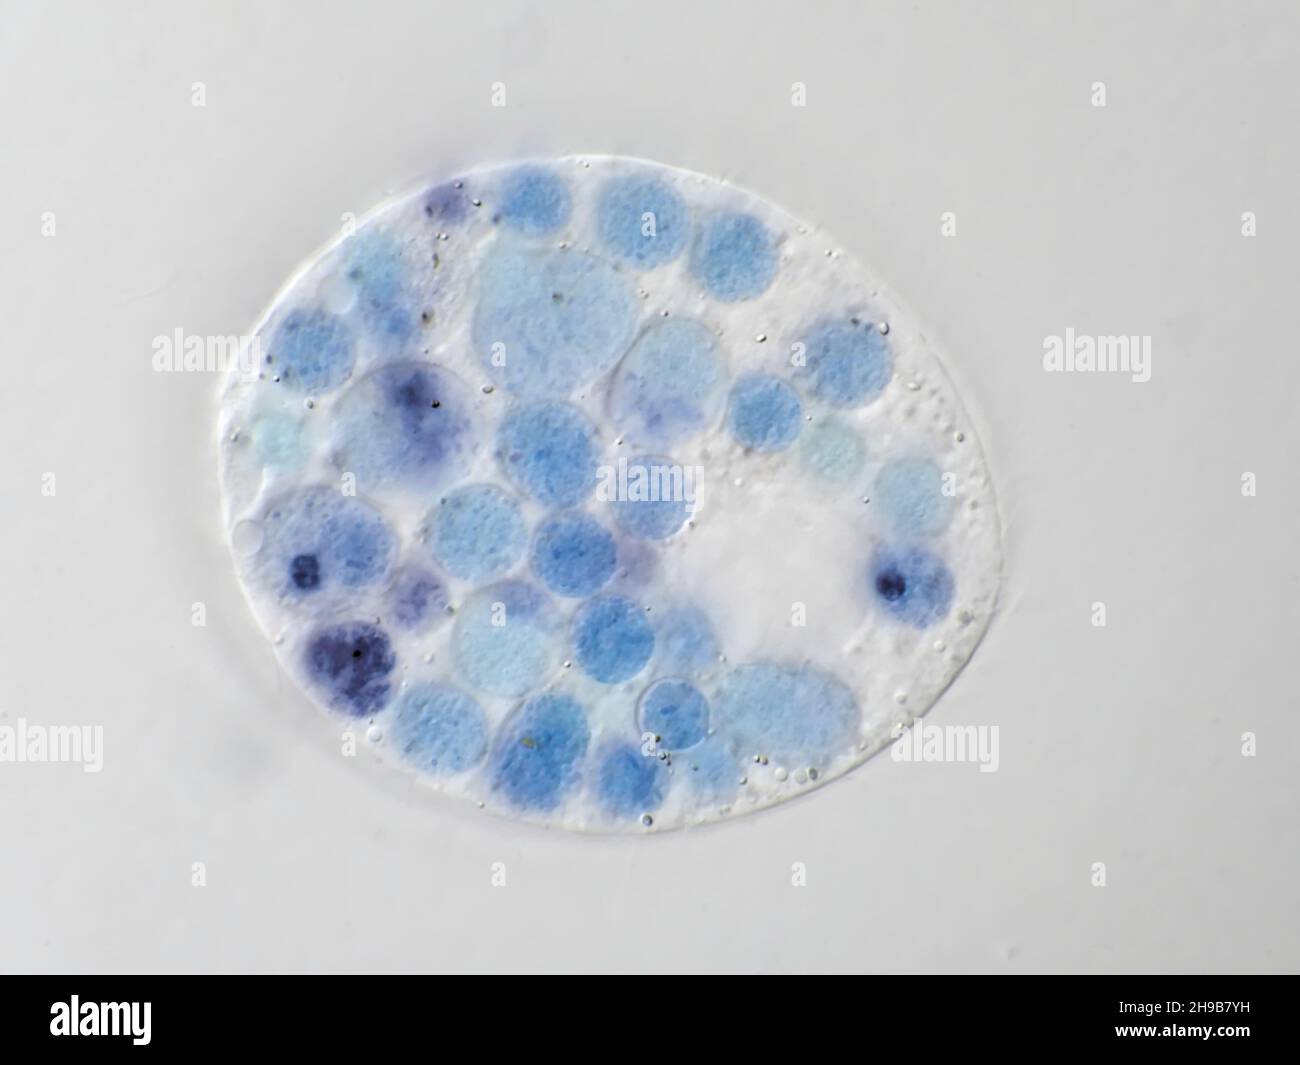 Un microbio protista de una muestra de agua, con vacuolas de alimentos visibles teñidas de azul, imagen de microscopía con campo de visión horizontal de aproximadamente 121 micrómetros Foto de stock